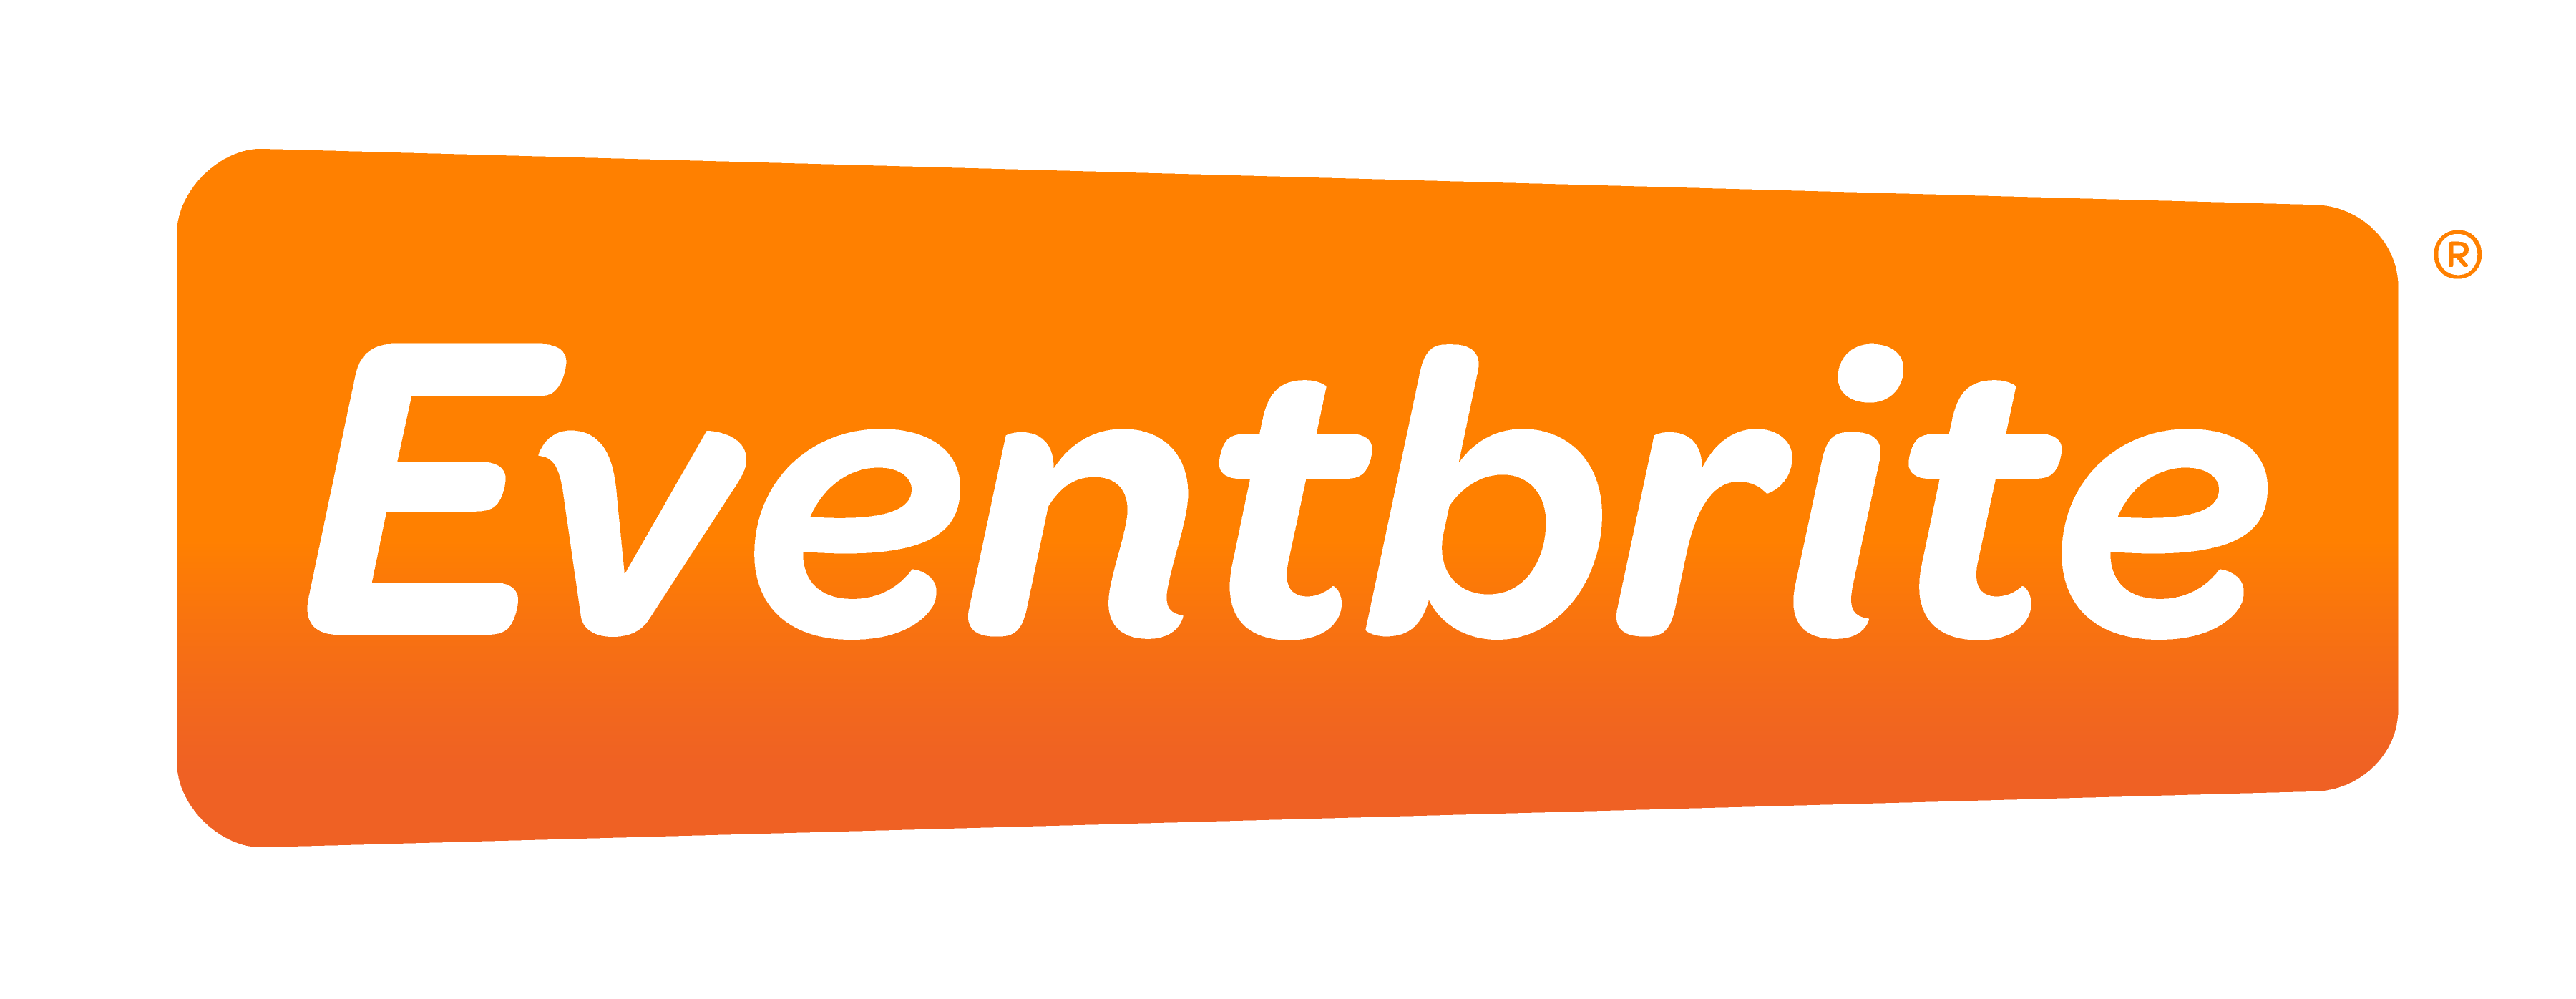 Eventbrite.com Logo - evvnt announce inclusion in Eventbrite Spectrum launch